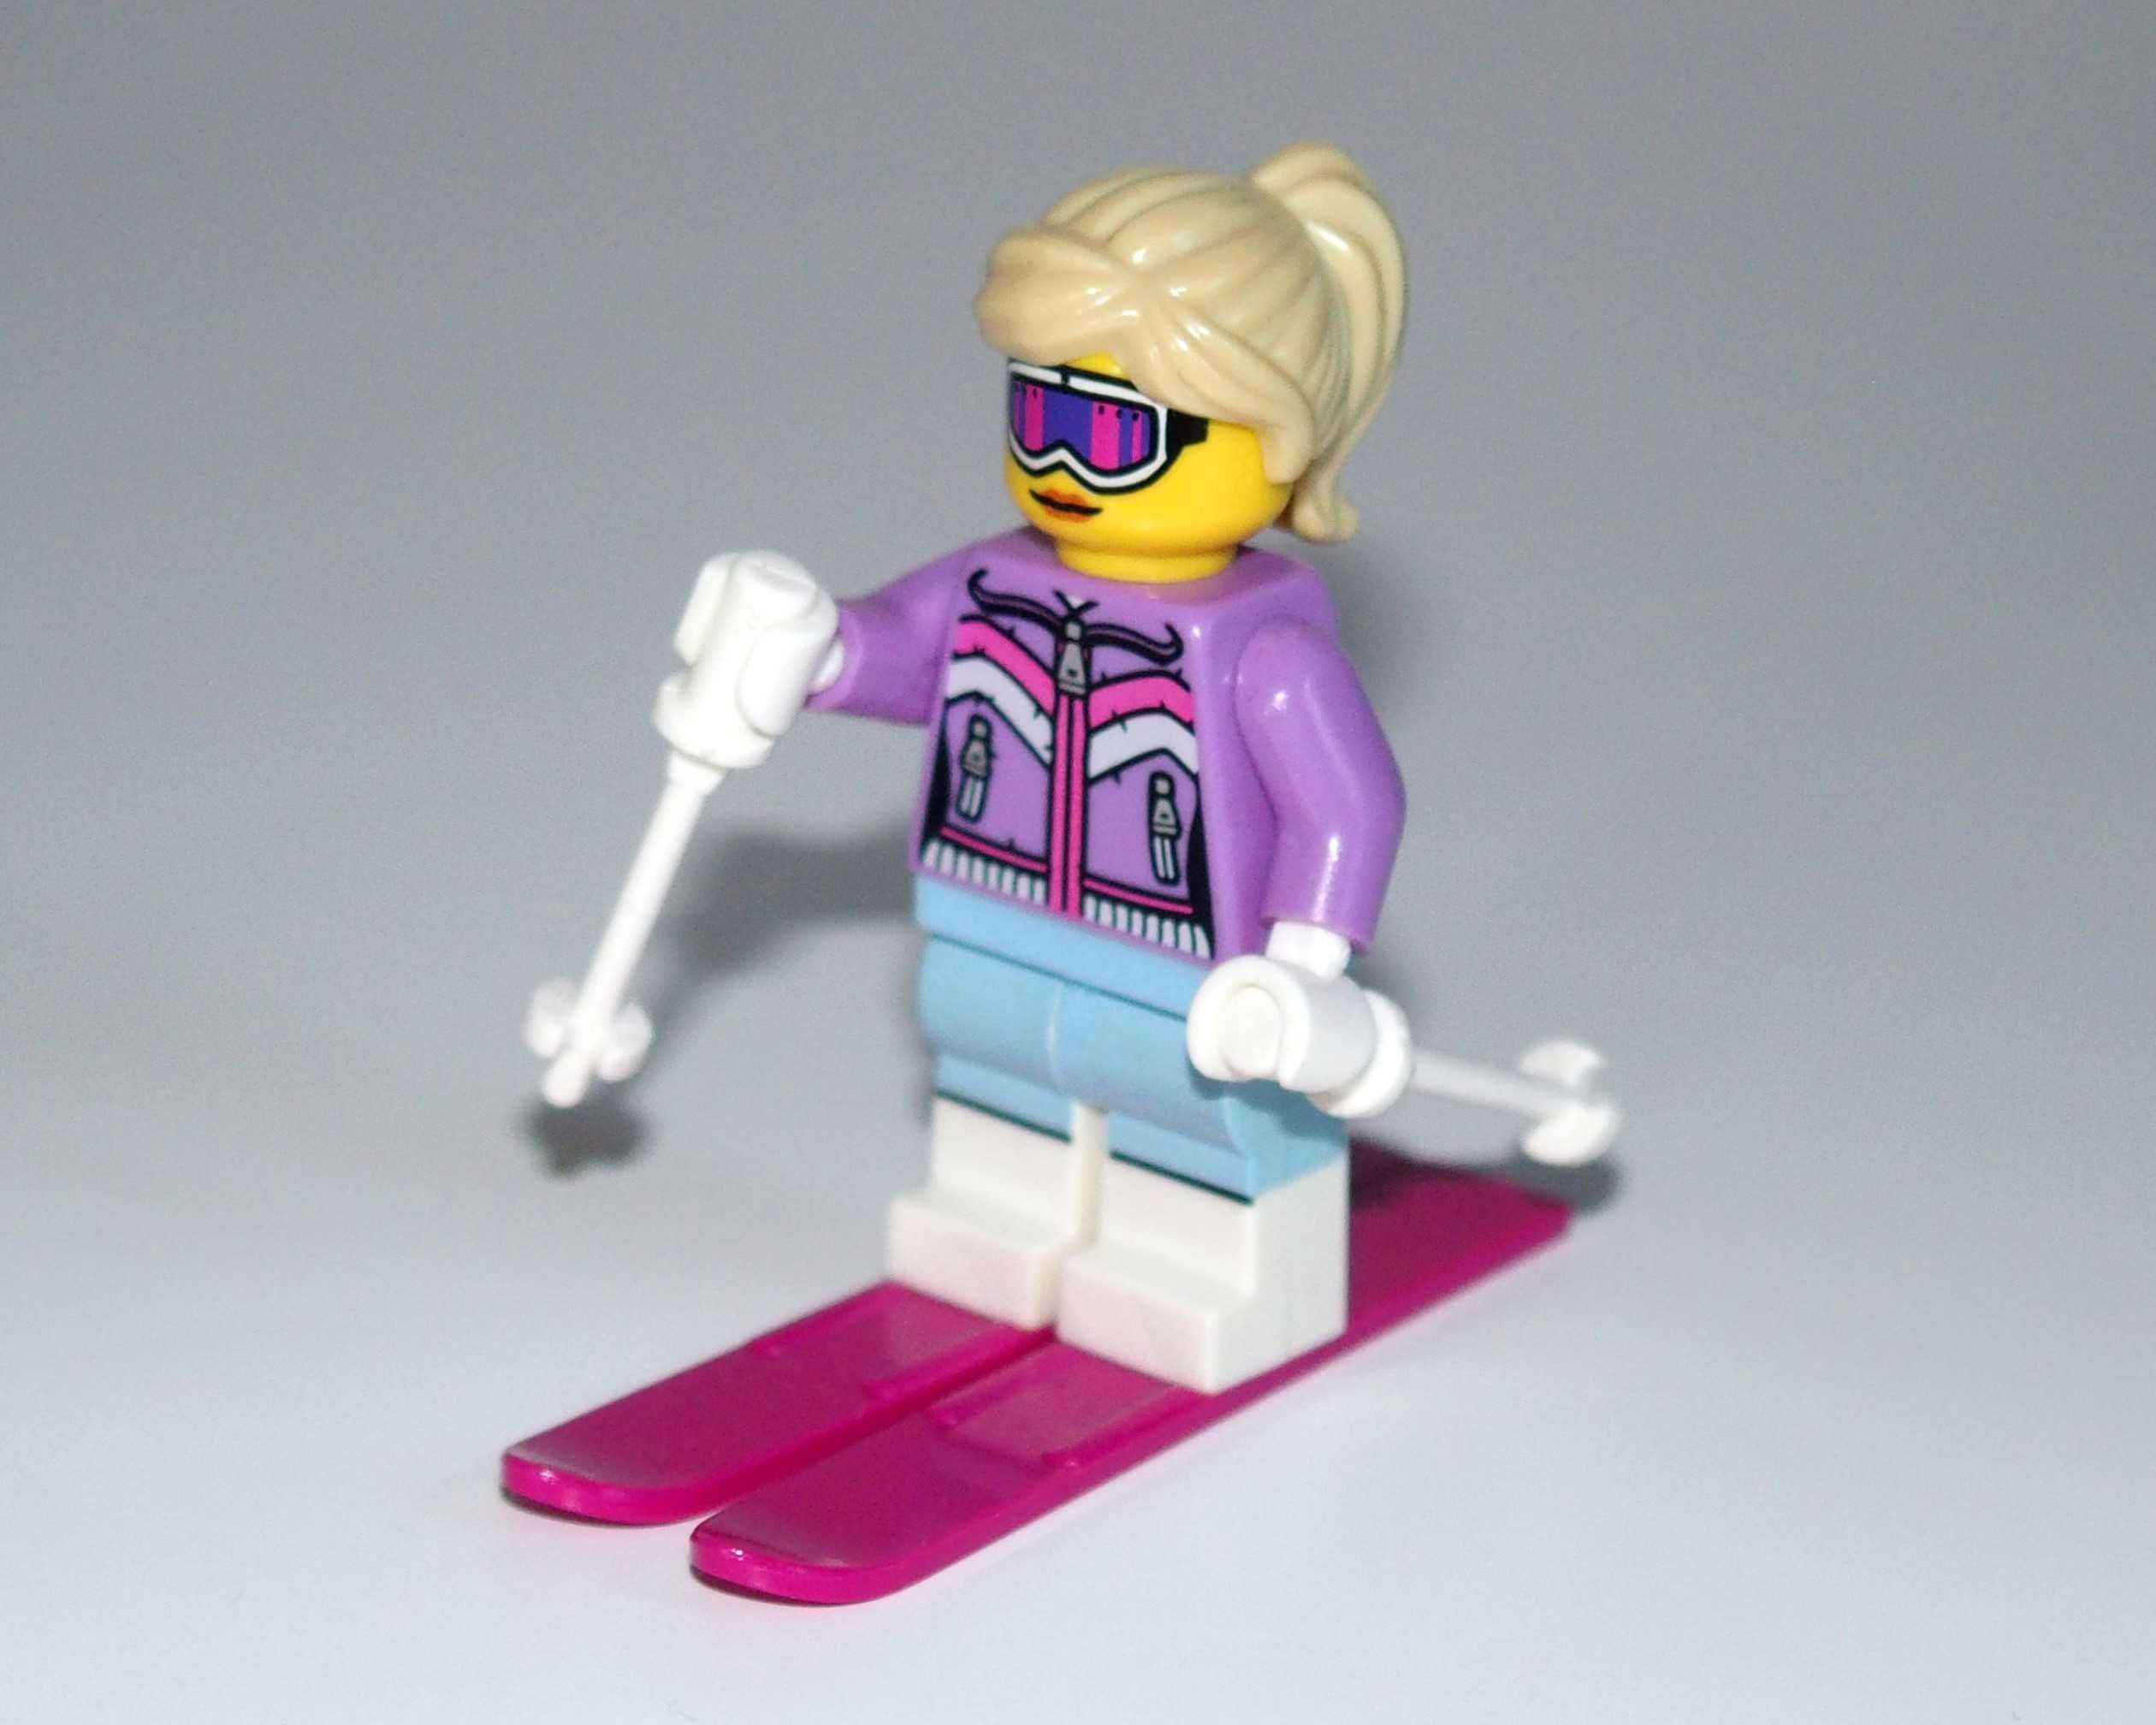 Minifigurka LEGO - Narciarka / Downhill skier - figurka seria 8